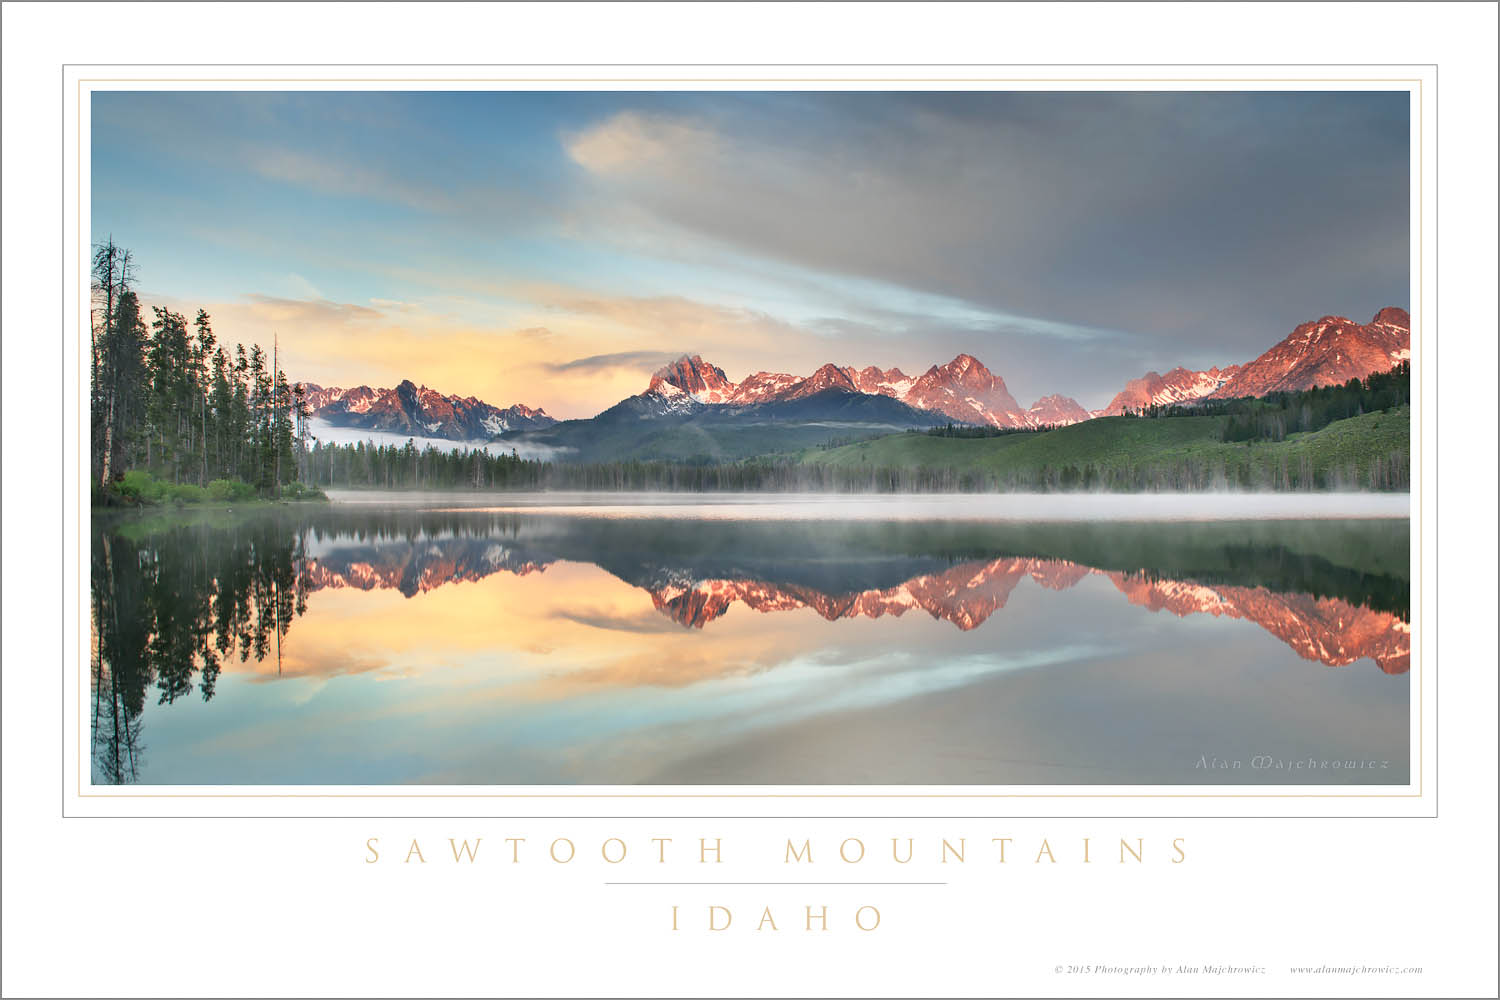 Little Redfish Lake at sunrise, Sawtooth National Recreation Area Idaho